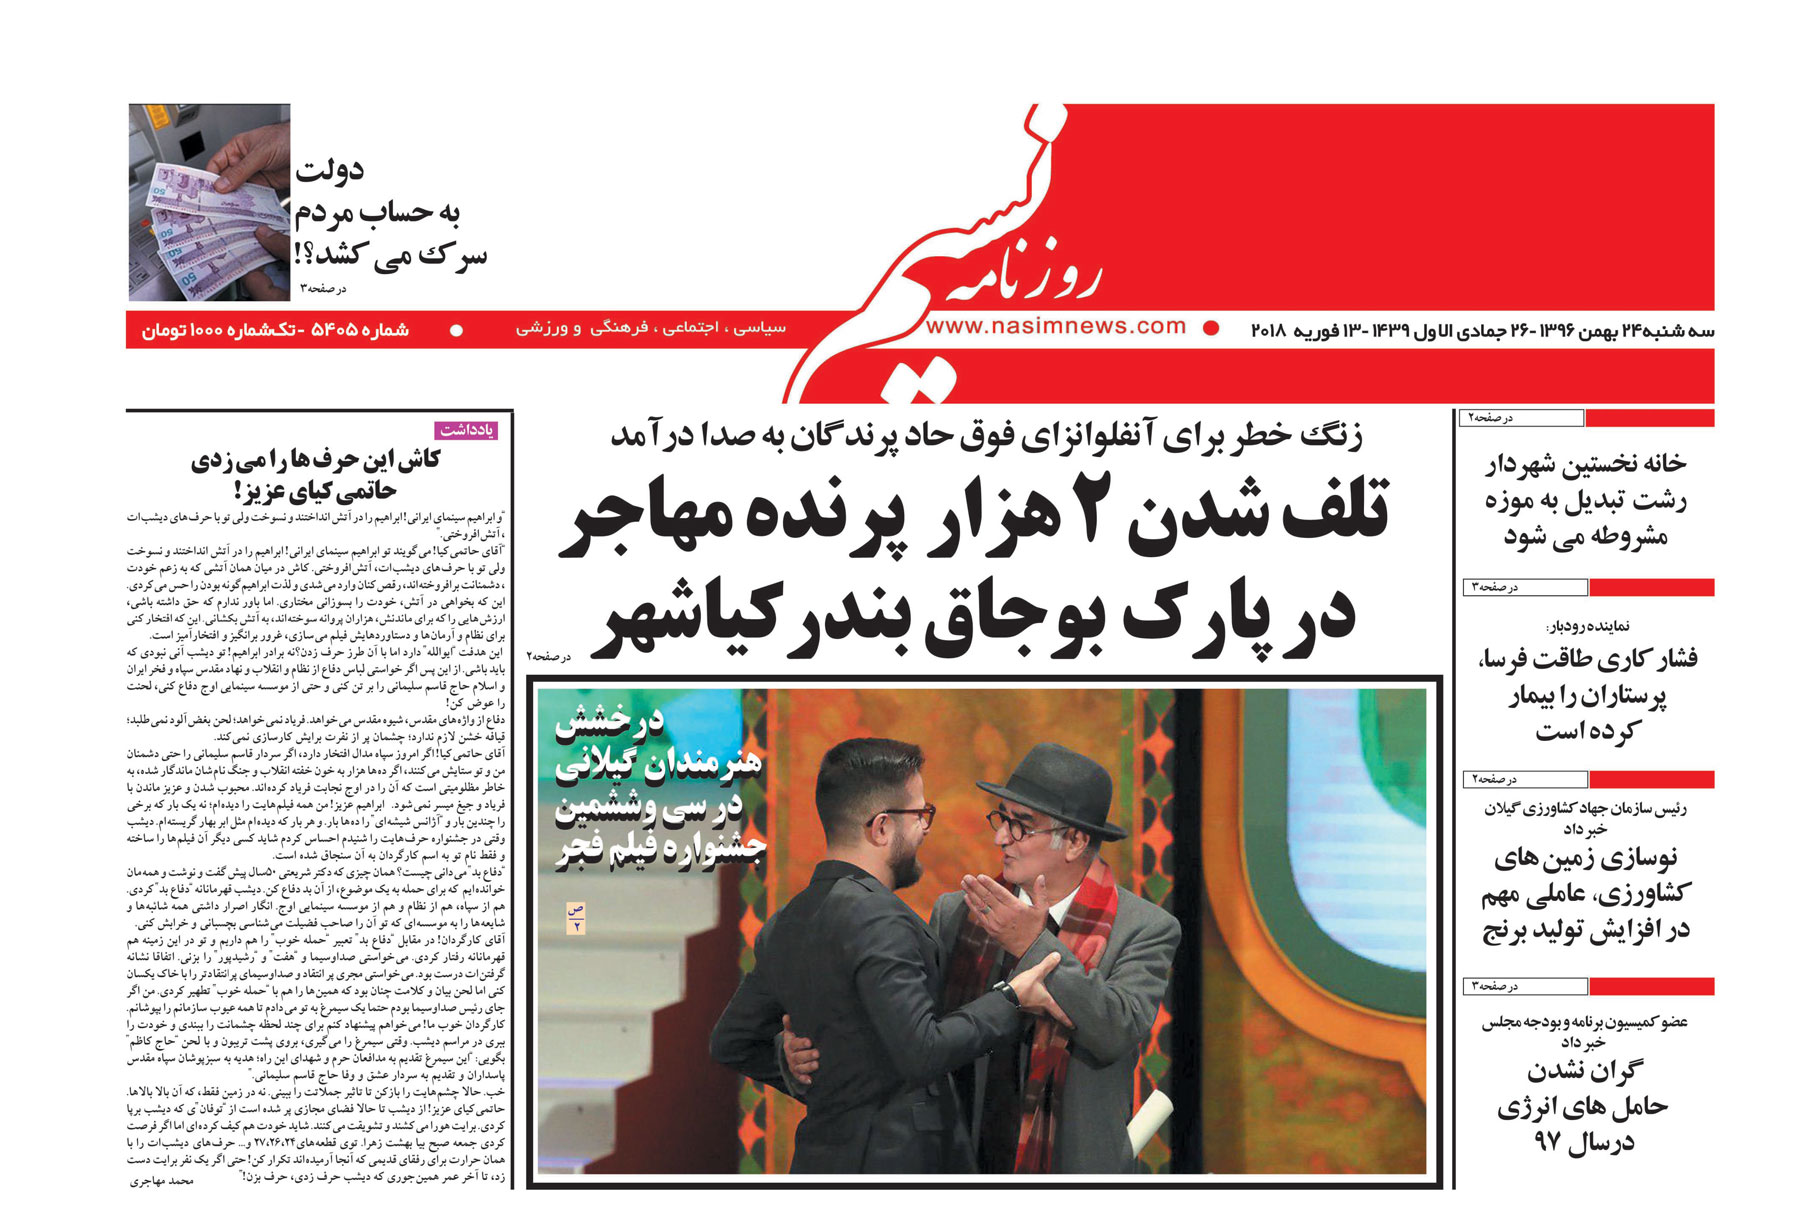  دانلود نسخه چاپی روزنامه